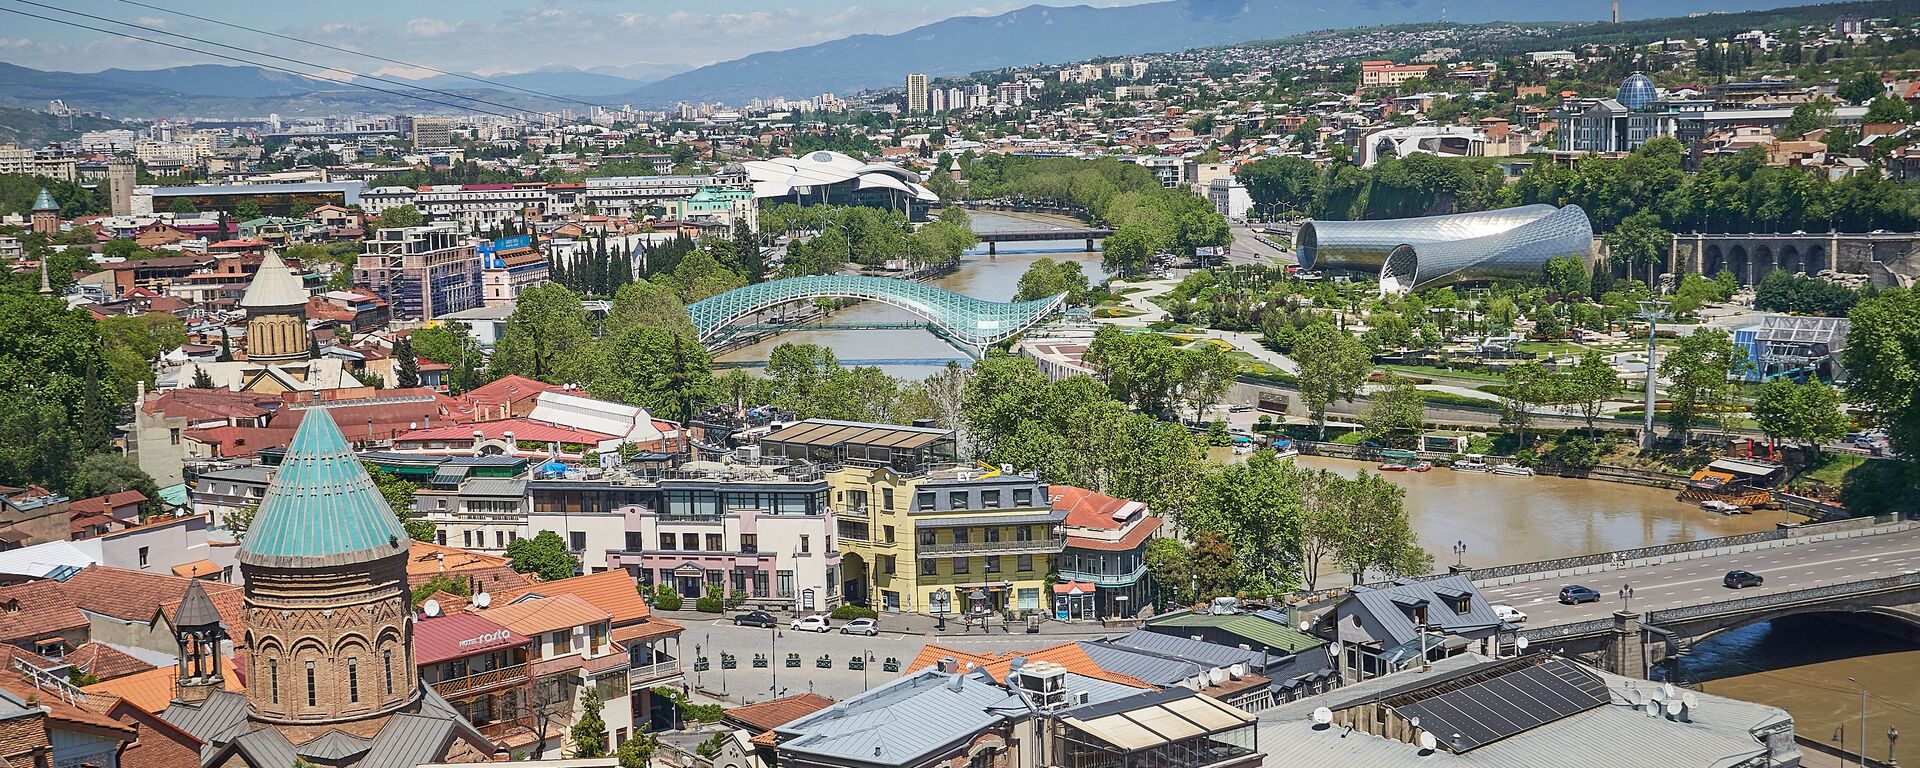 Вид на город Тбилиси - исторический центр набережная реки Кура и мосты - Sputnik Грузия, 1920, 28.06.2021